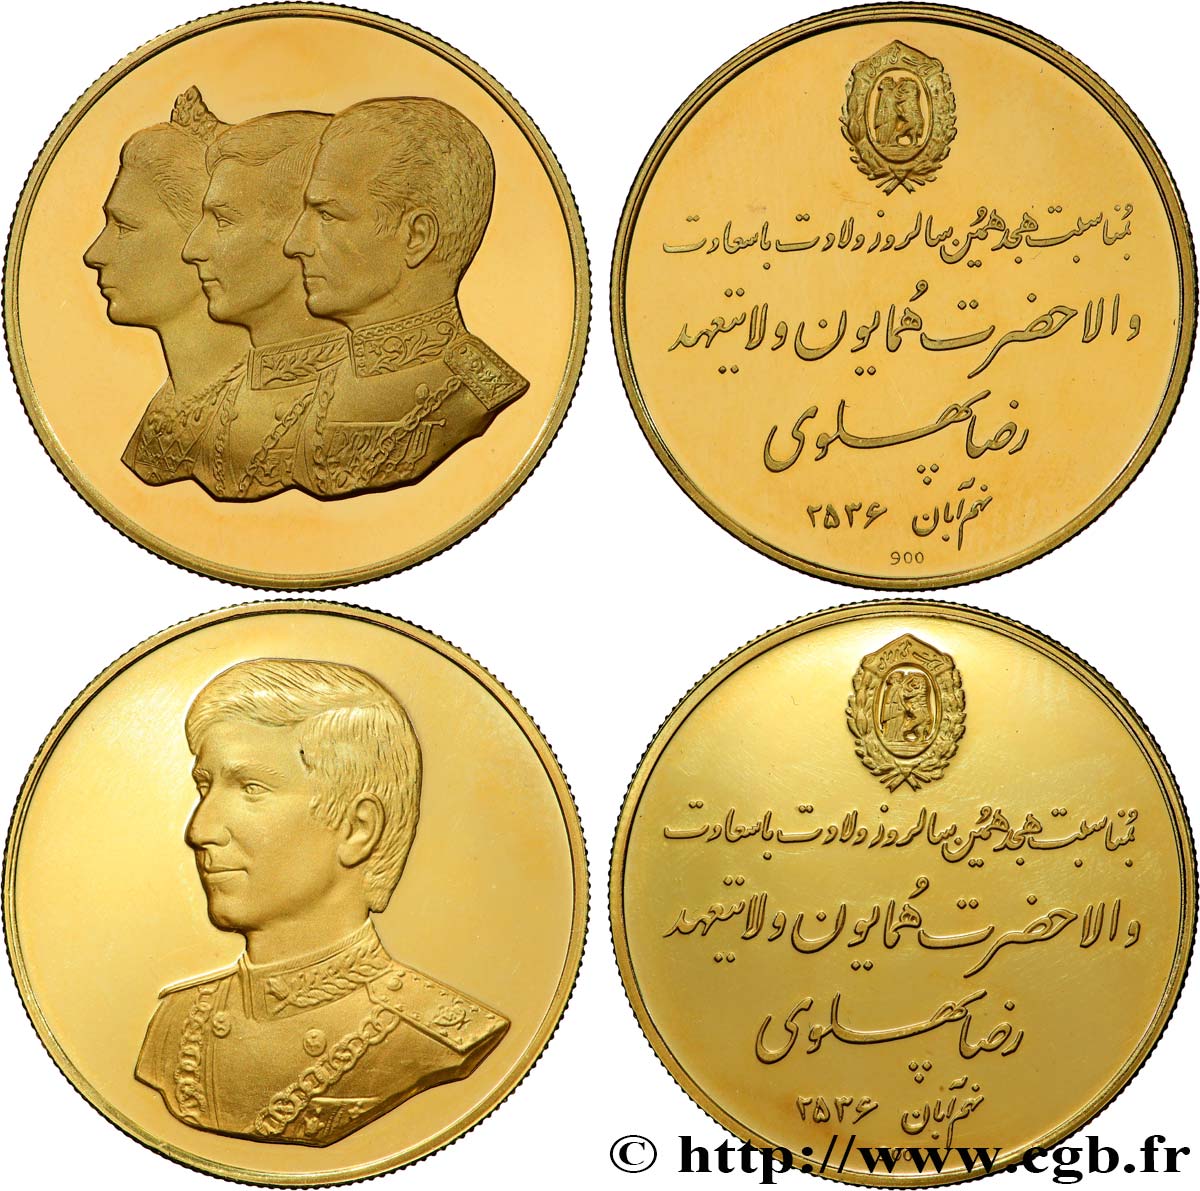 IRAN - MOHAMMAD REZA PAHLAVI SHAH Lot de 2 médailles, 18e anniversaire du prince héritier Reza Pahlavi MS